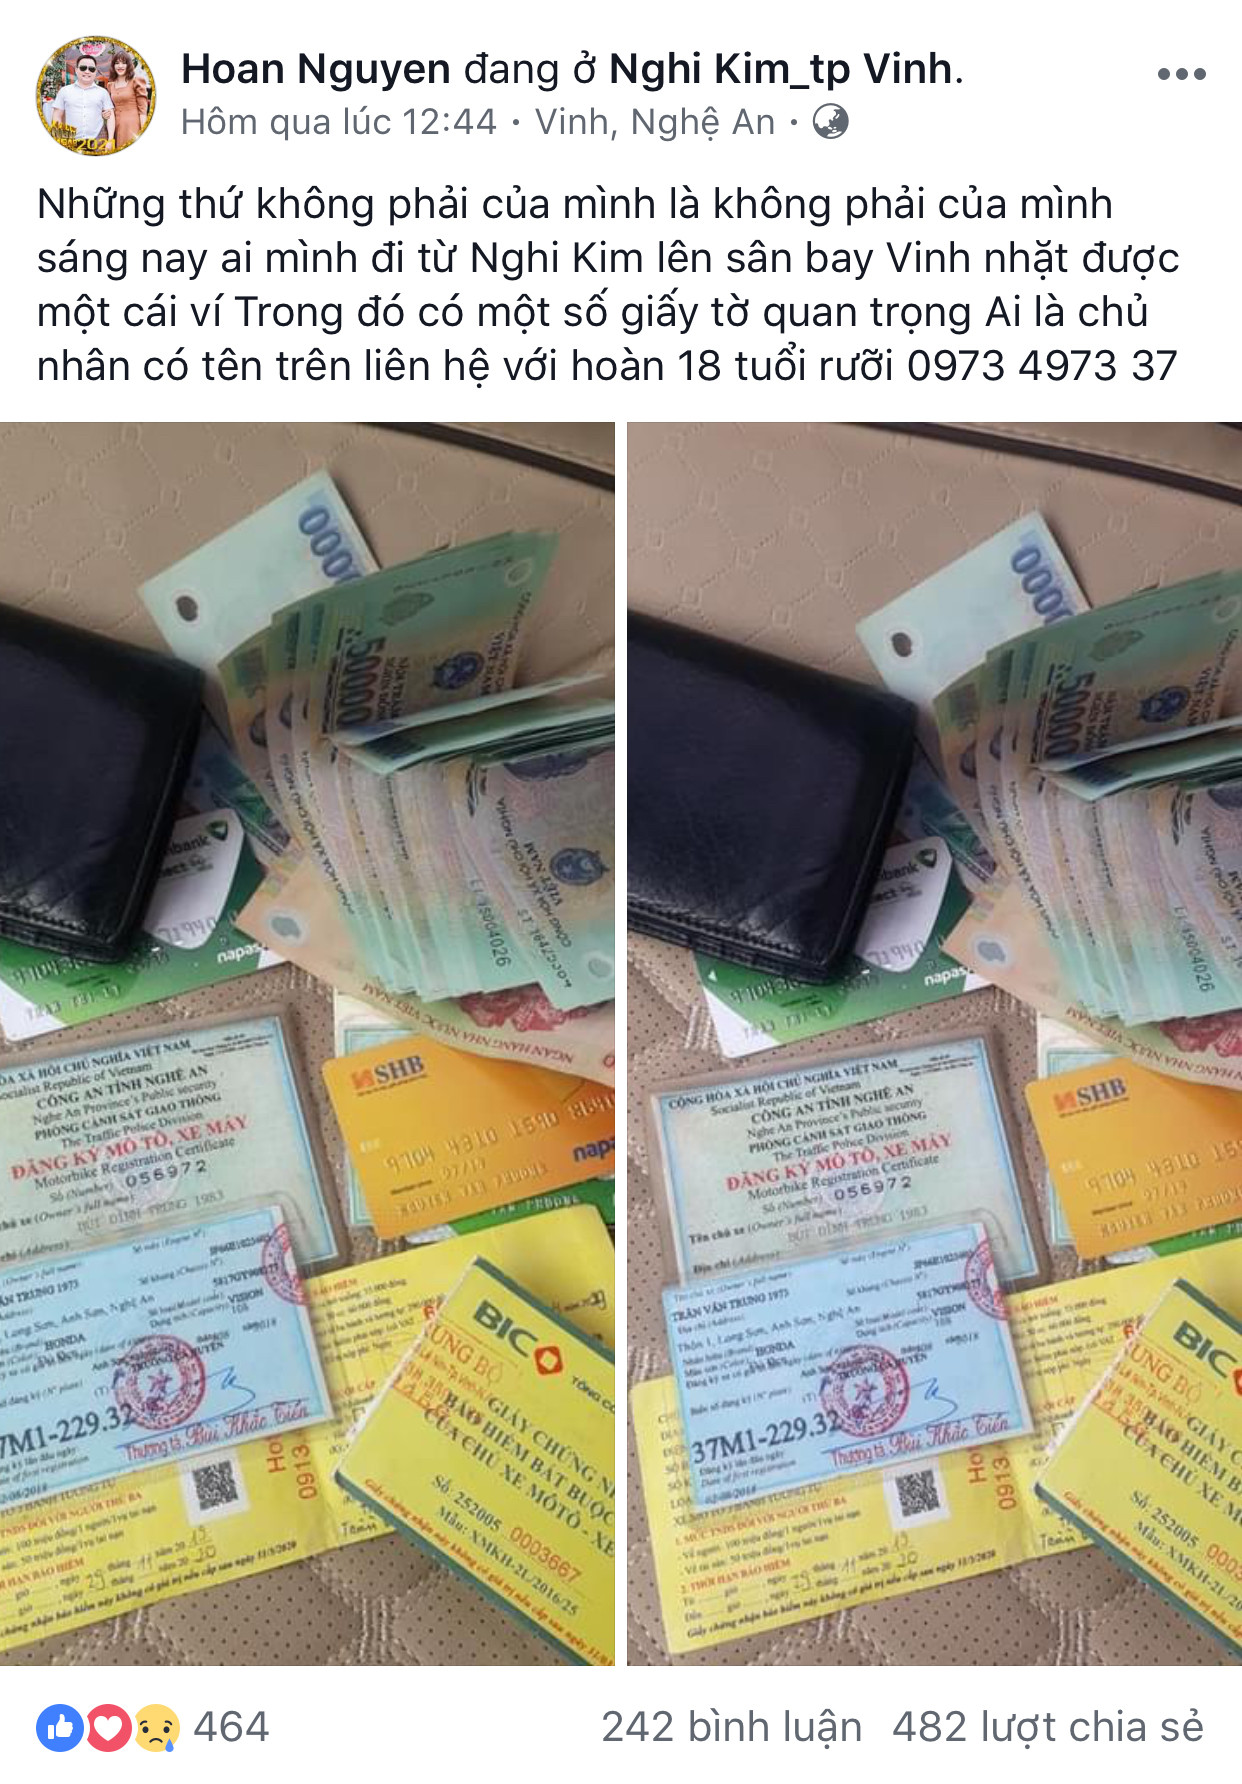 Dòng trạng thái với nội dung và hình ảnh chiếc ví tiền được anh Nguyễn Văn Hoàn ở xã Nghi Kim- TP Vinh đăng trên facebook